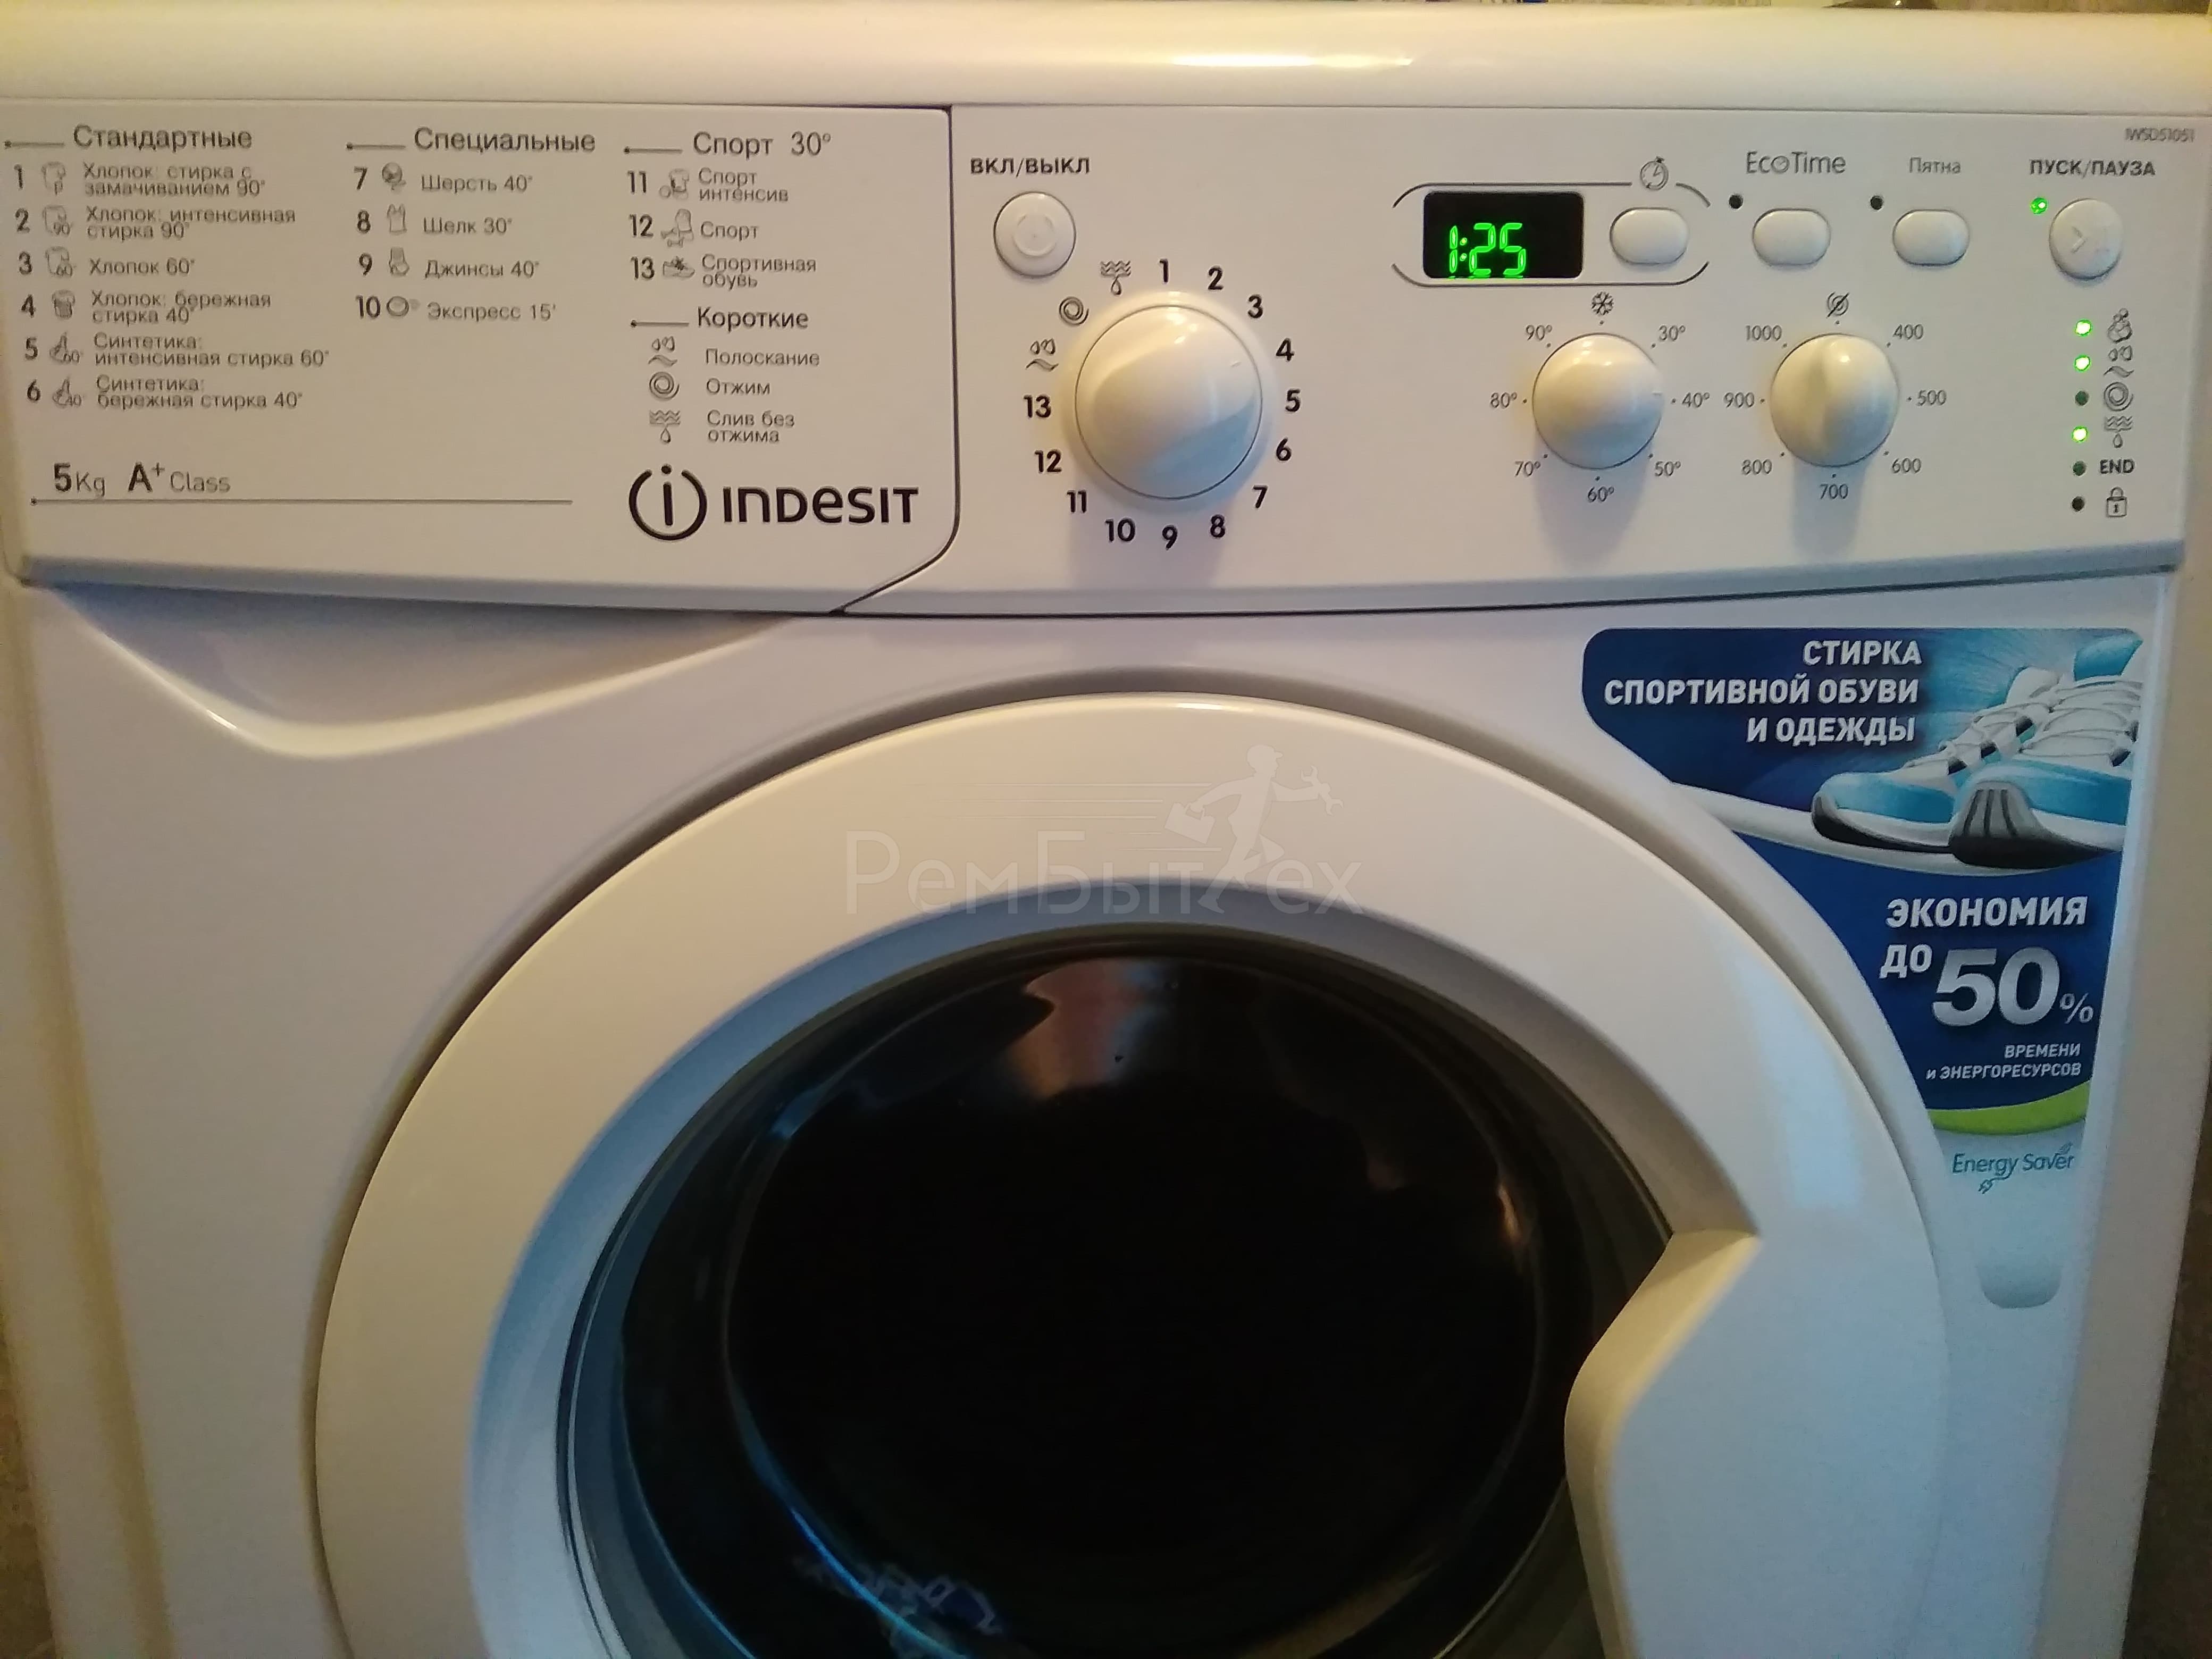 Не работает отжим в стиральной машине Индезит